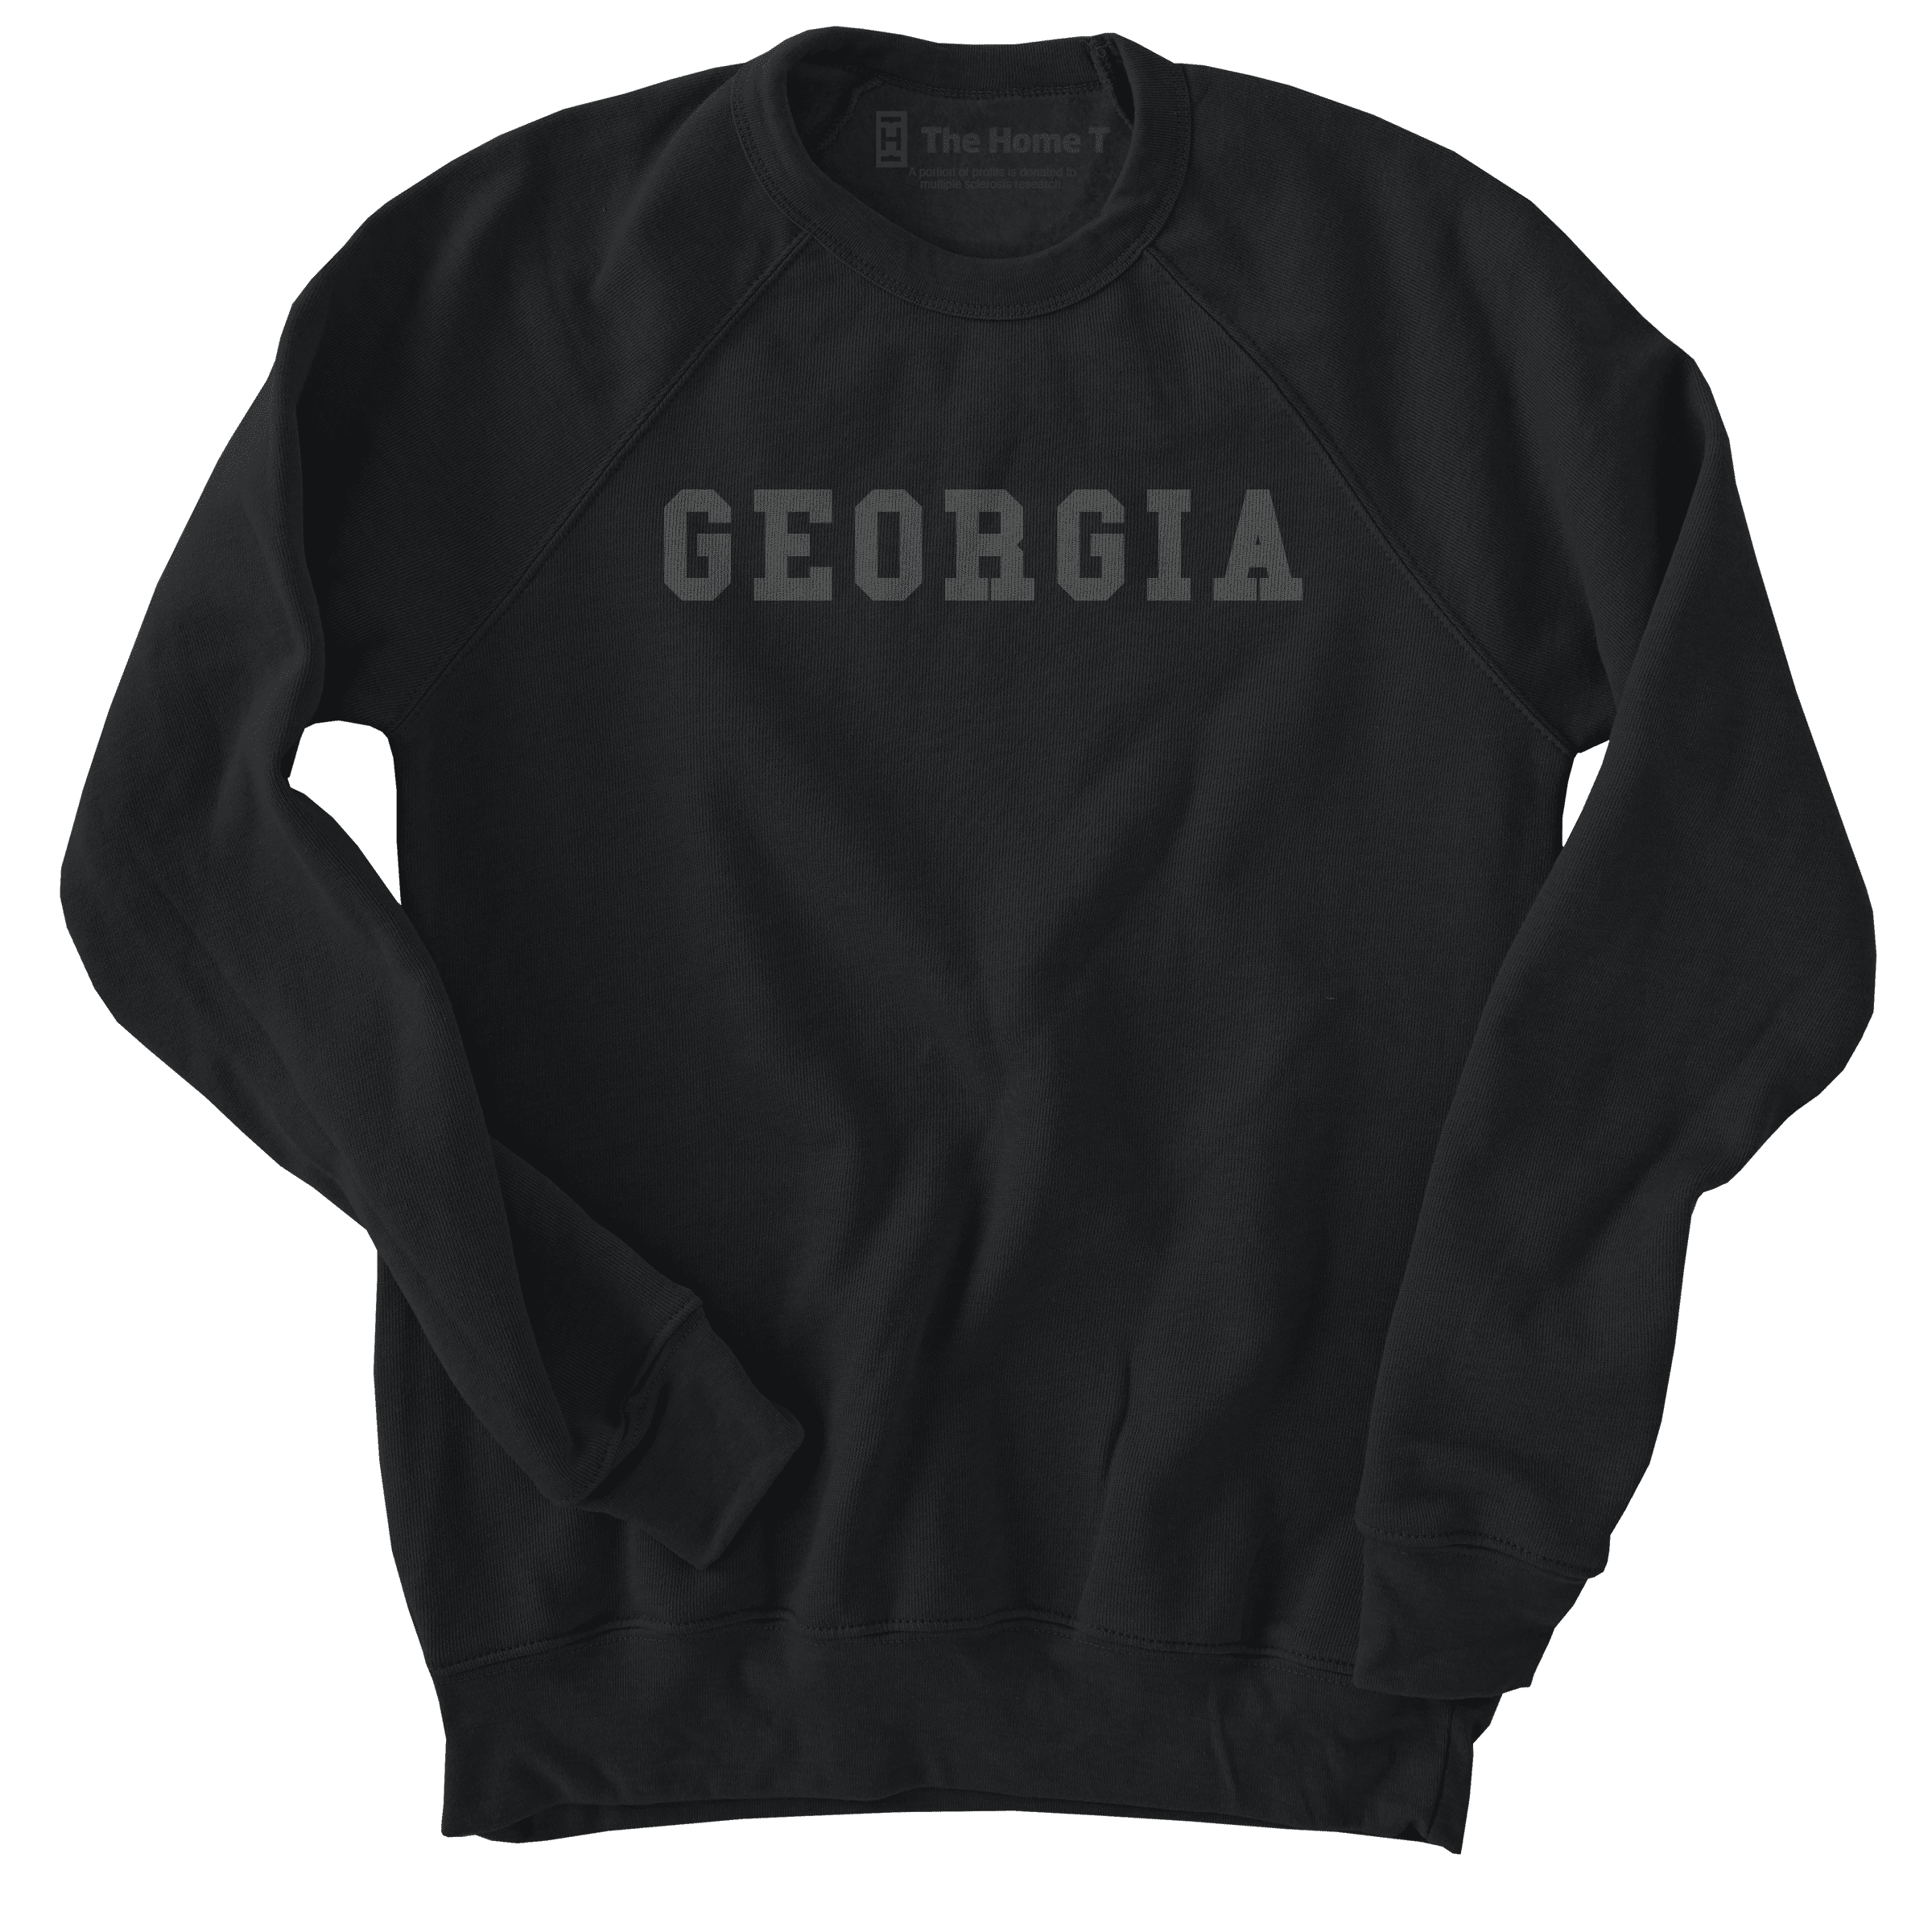 Georgia Black on Black